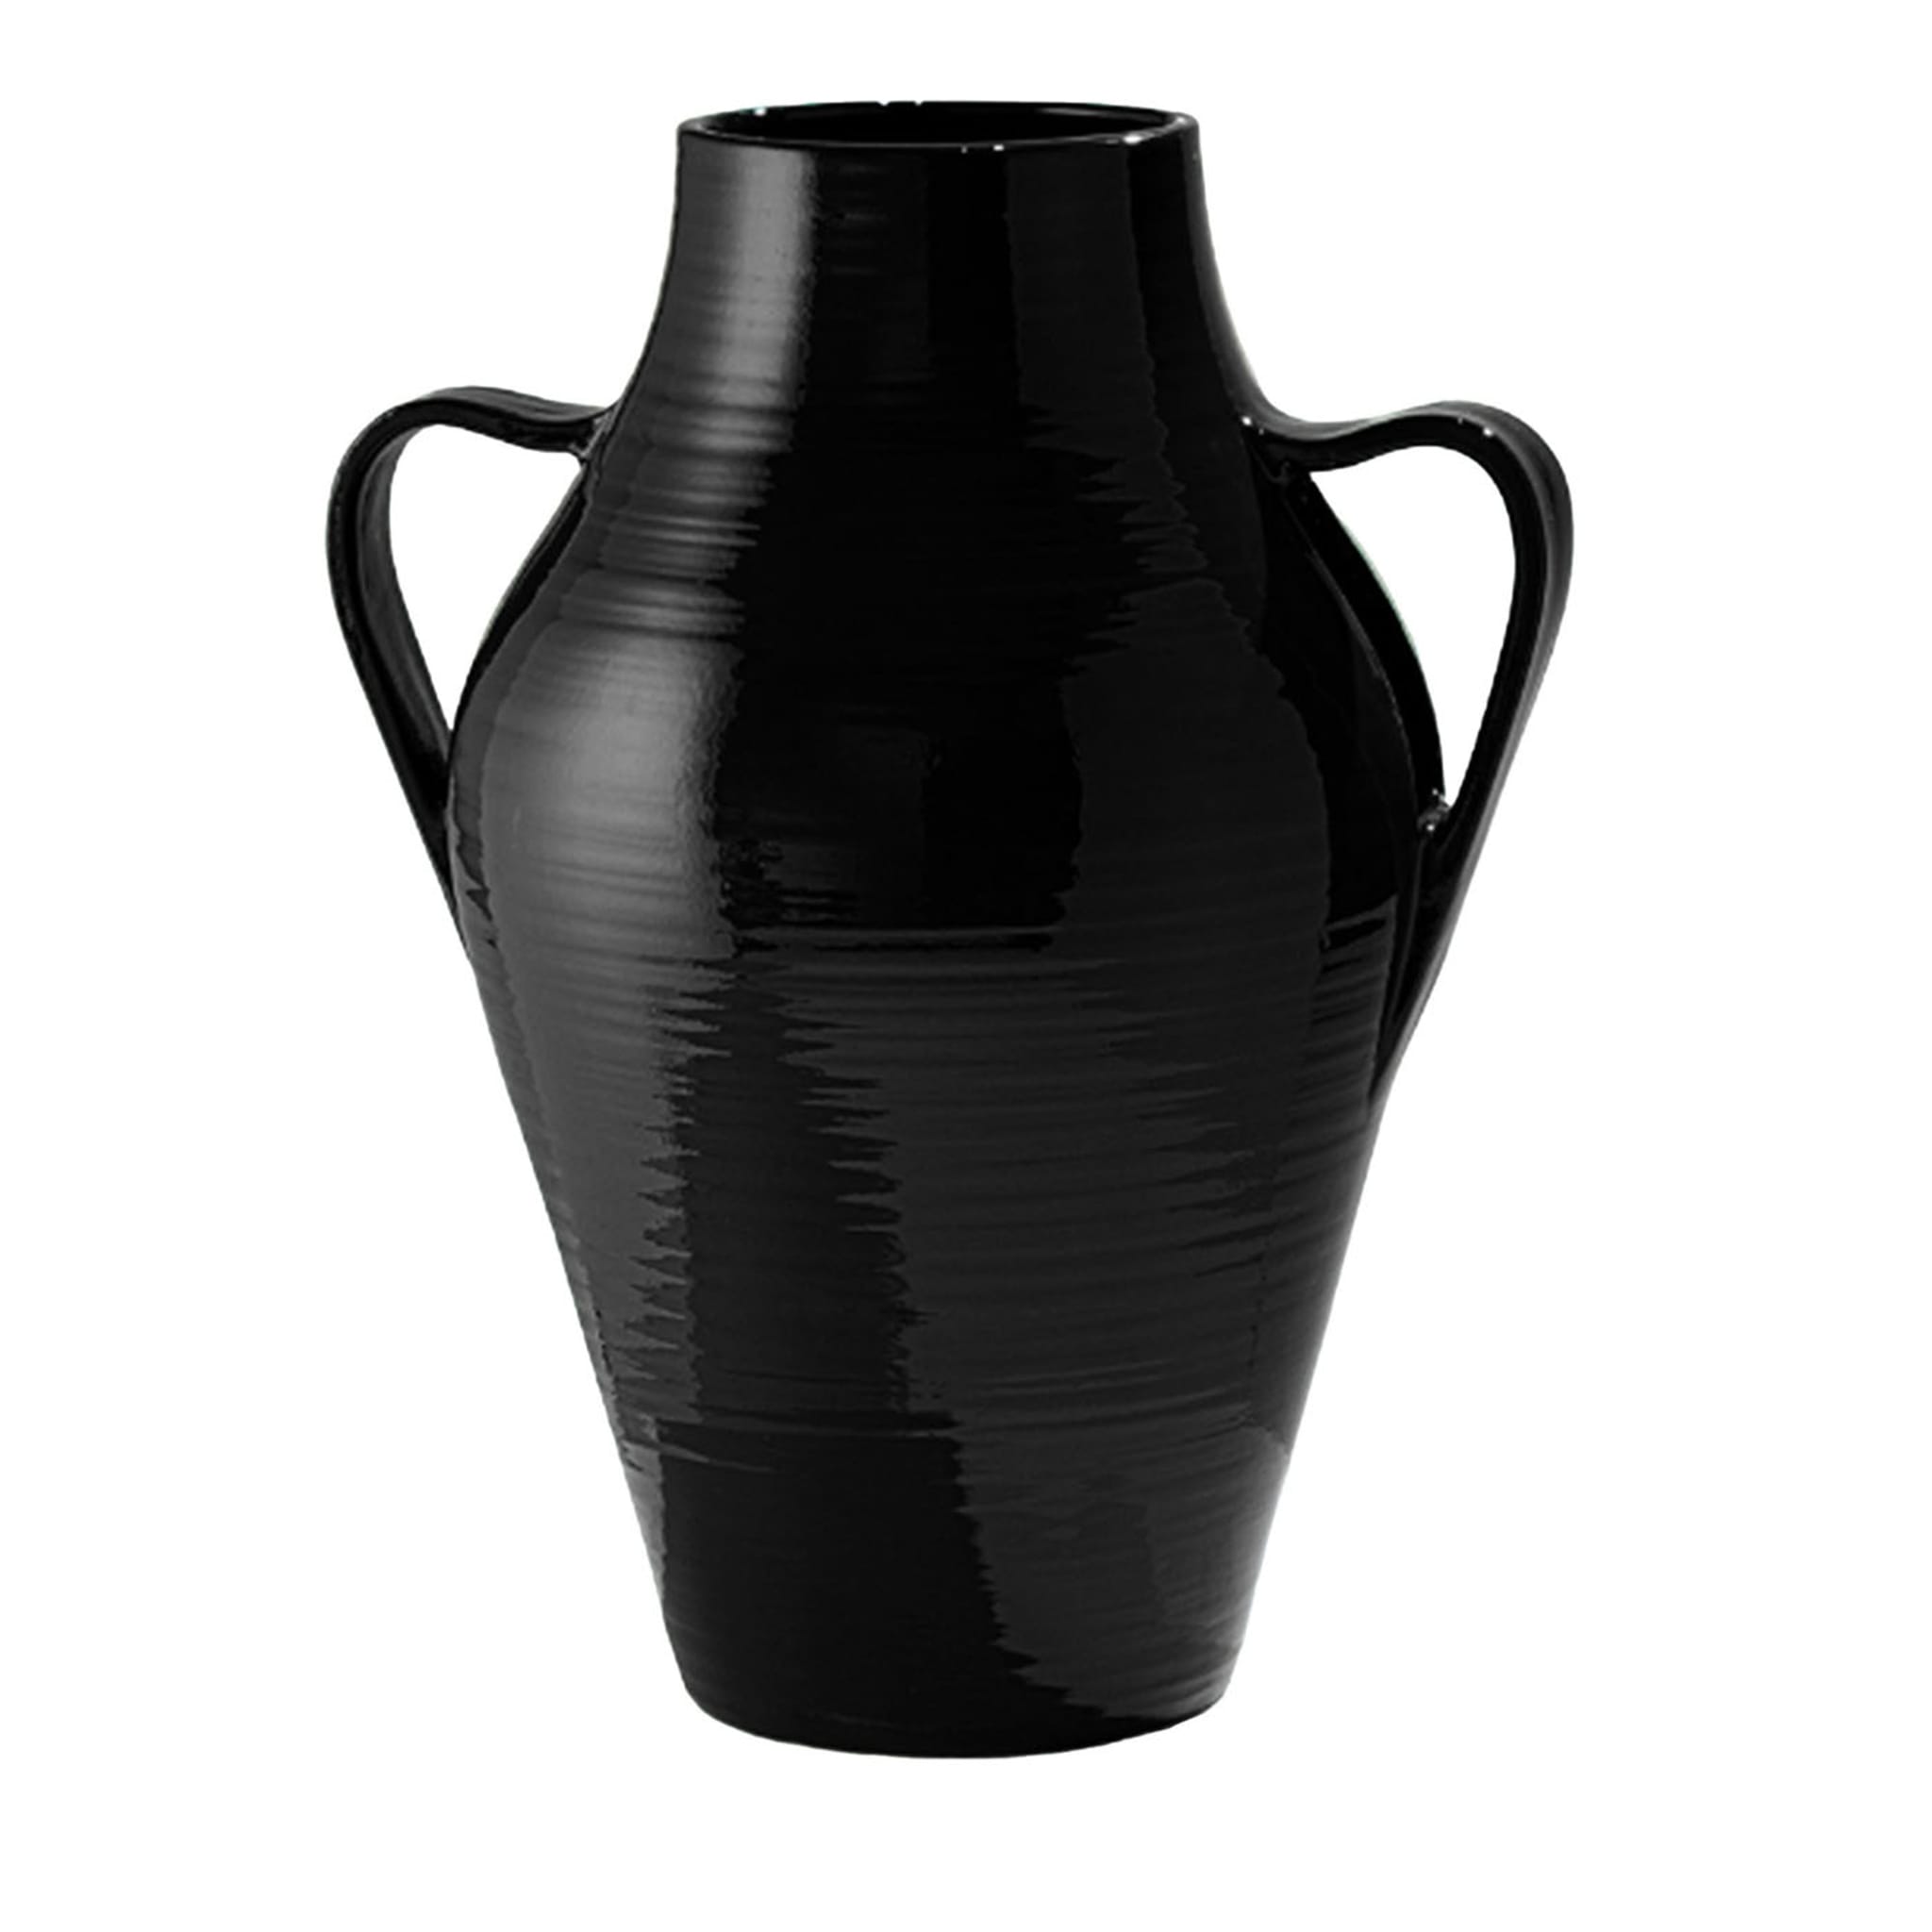 Quartara Black Amphora Vase - Main view